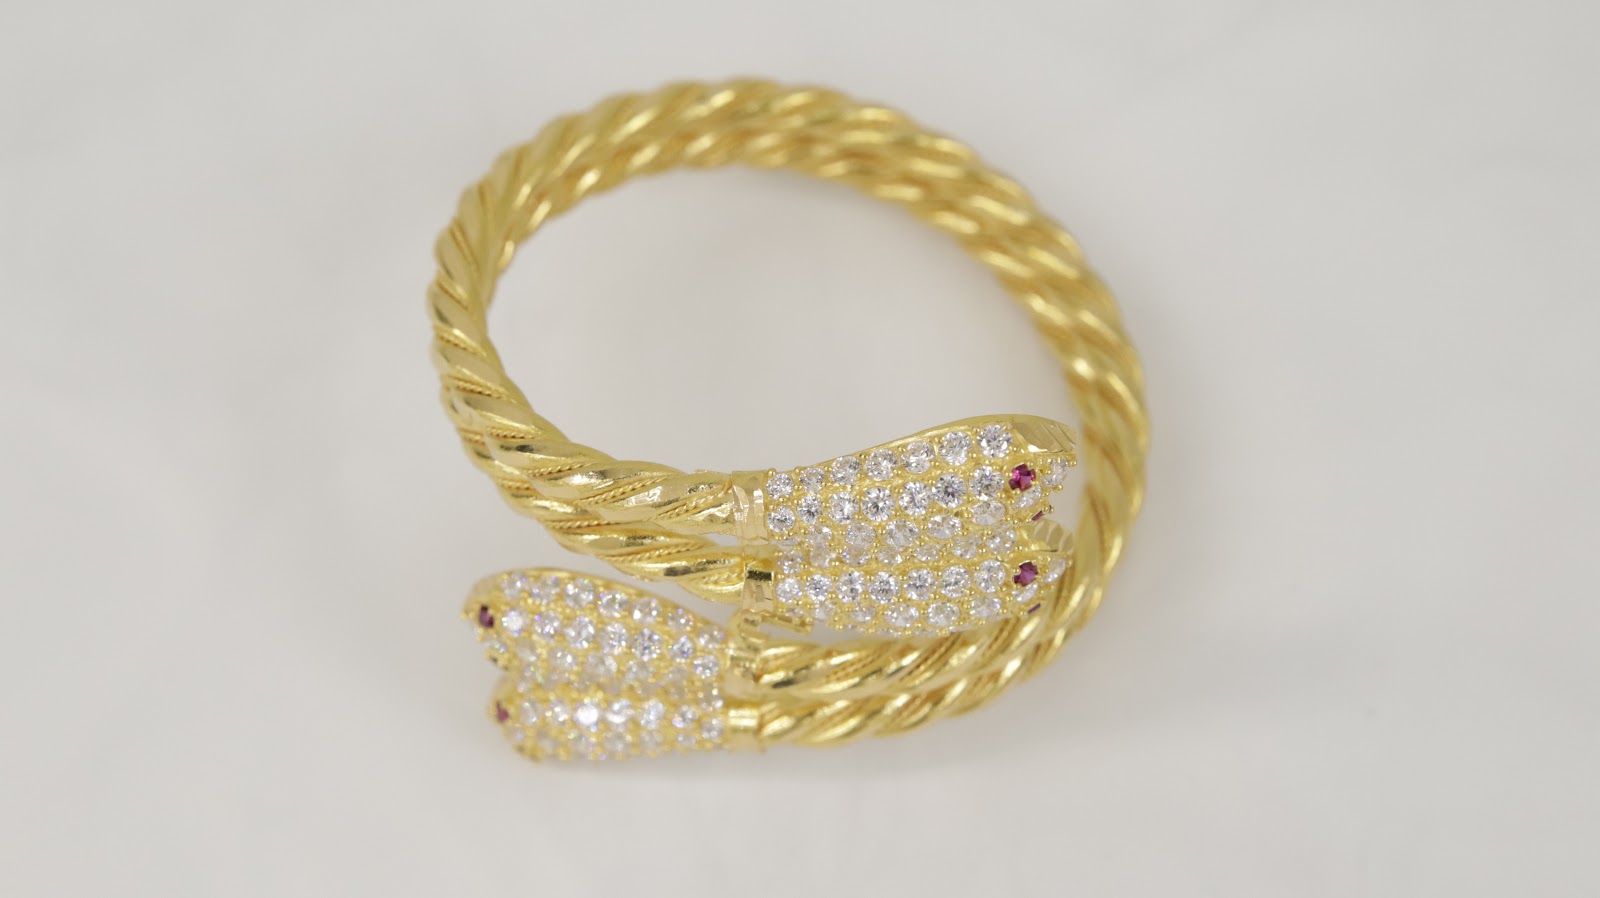 Bangle Bracelets 325 Dubai Palm Jewellery